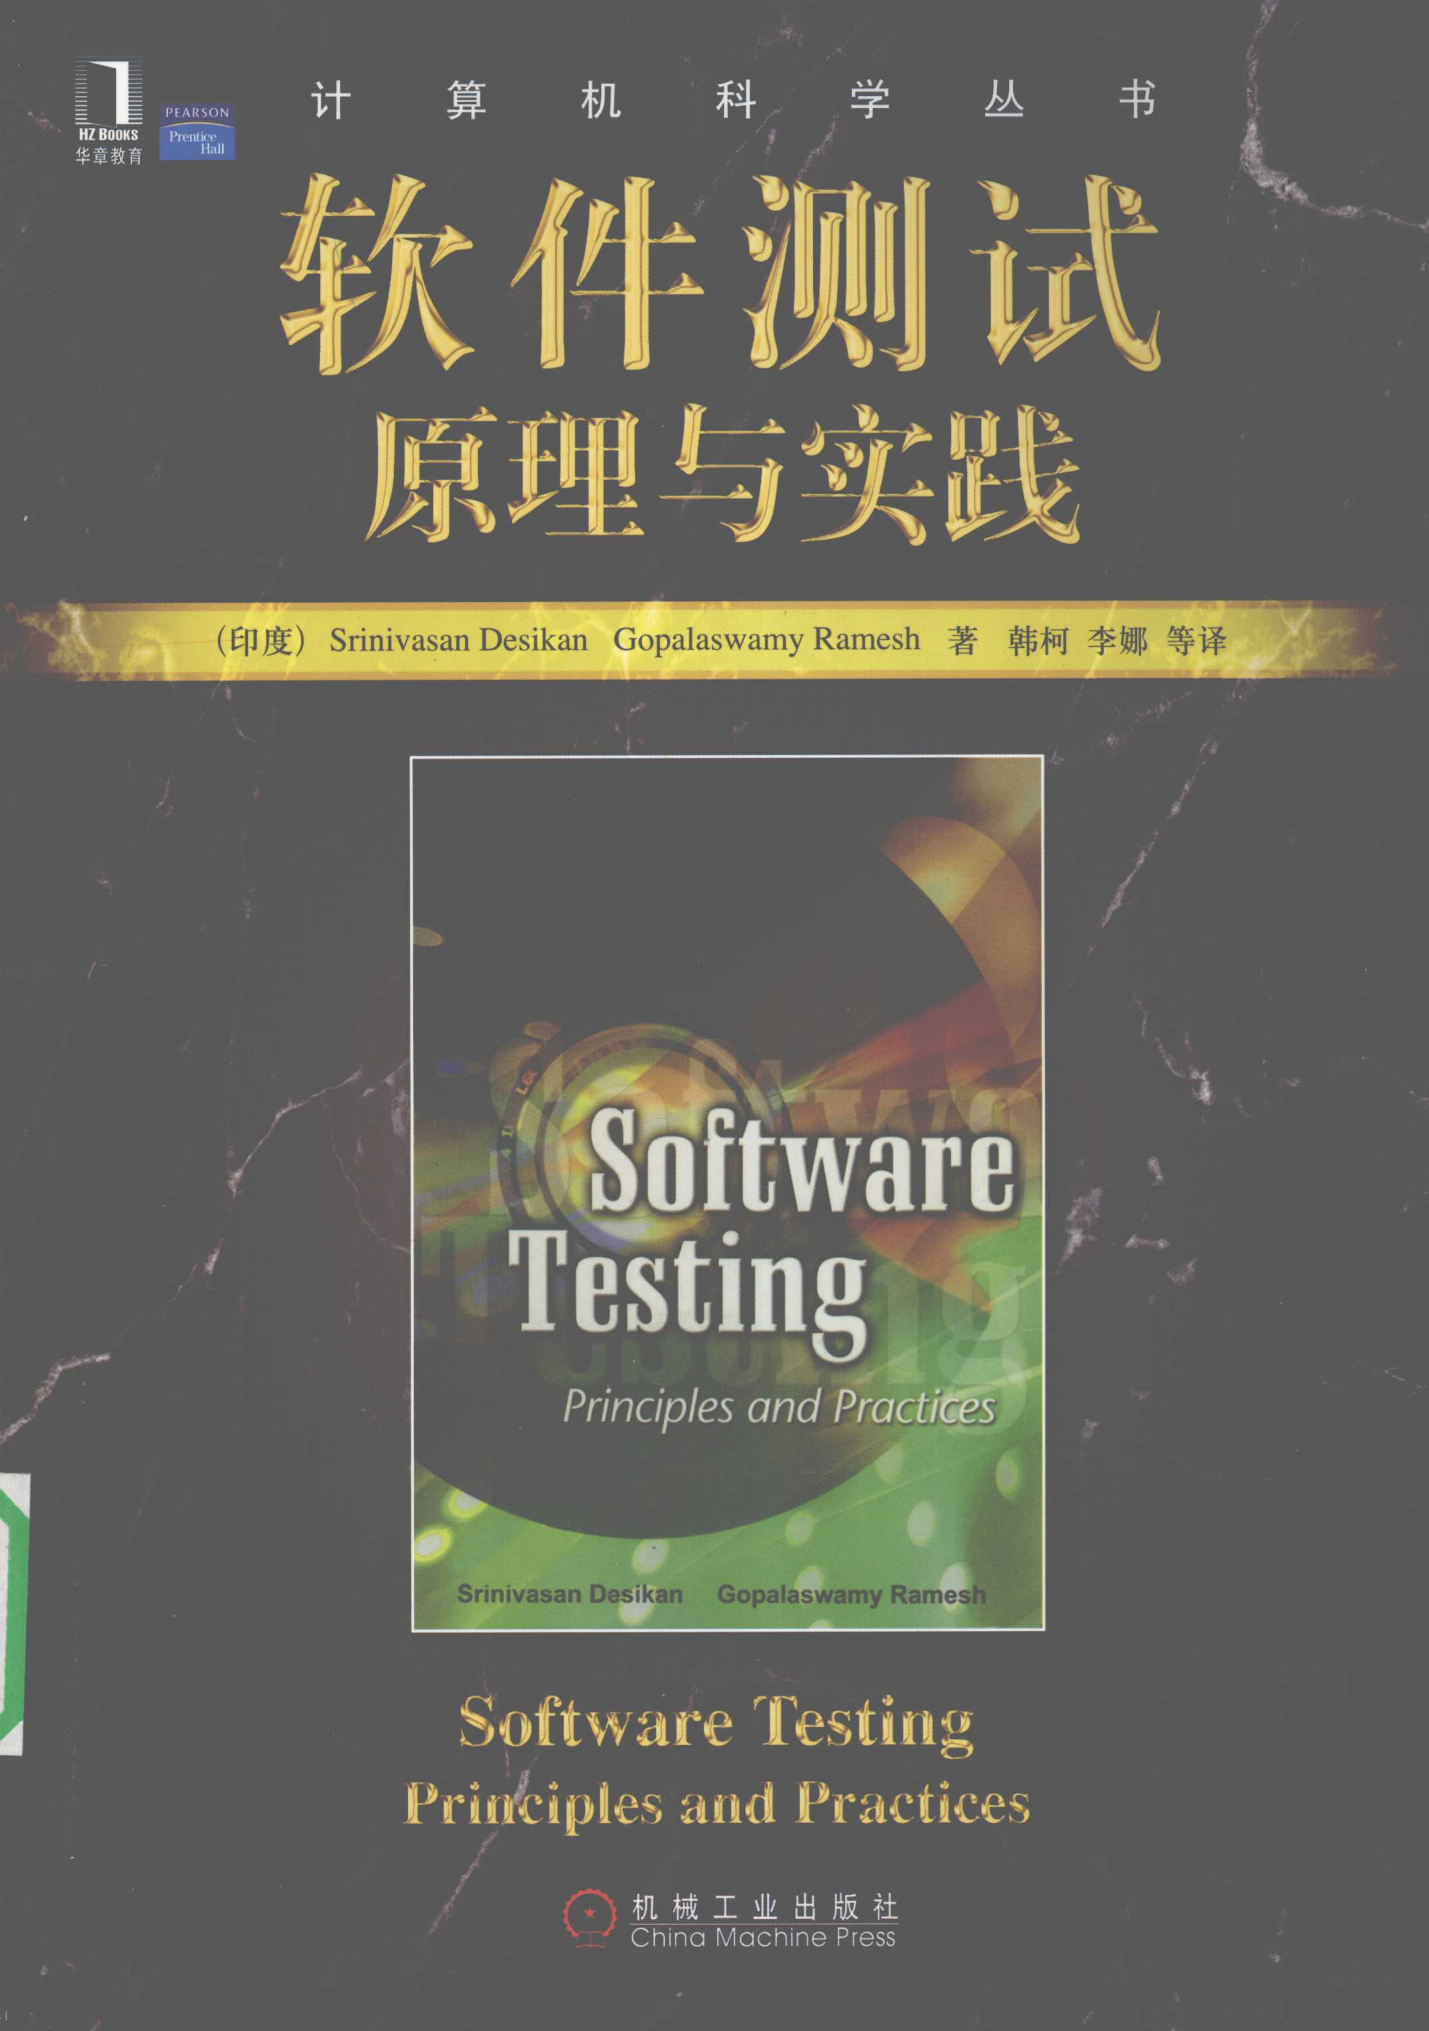 《软件测试原理与实践》书籍封面